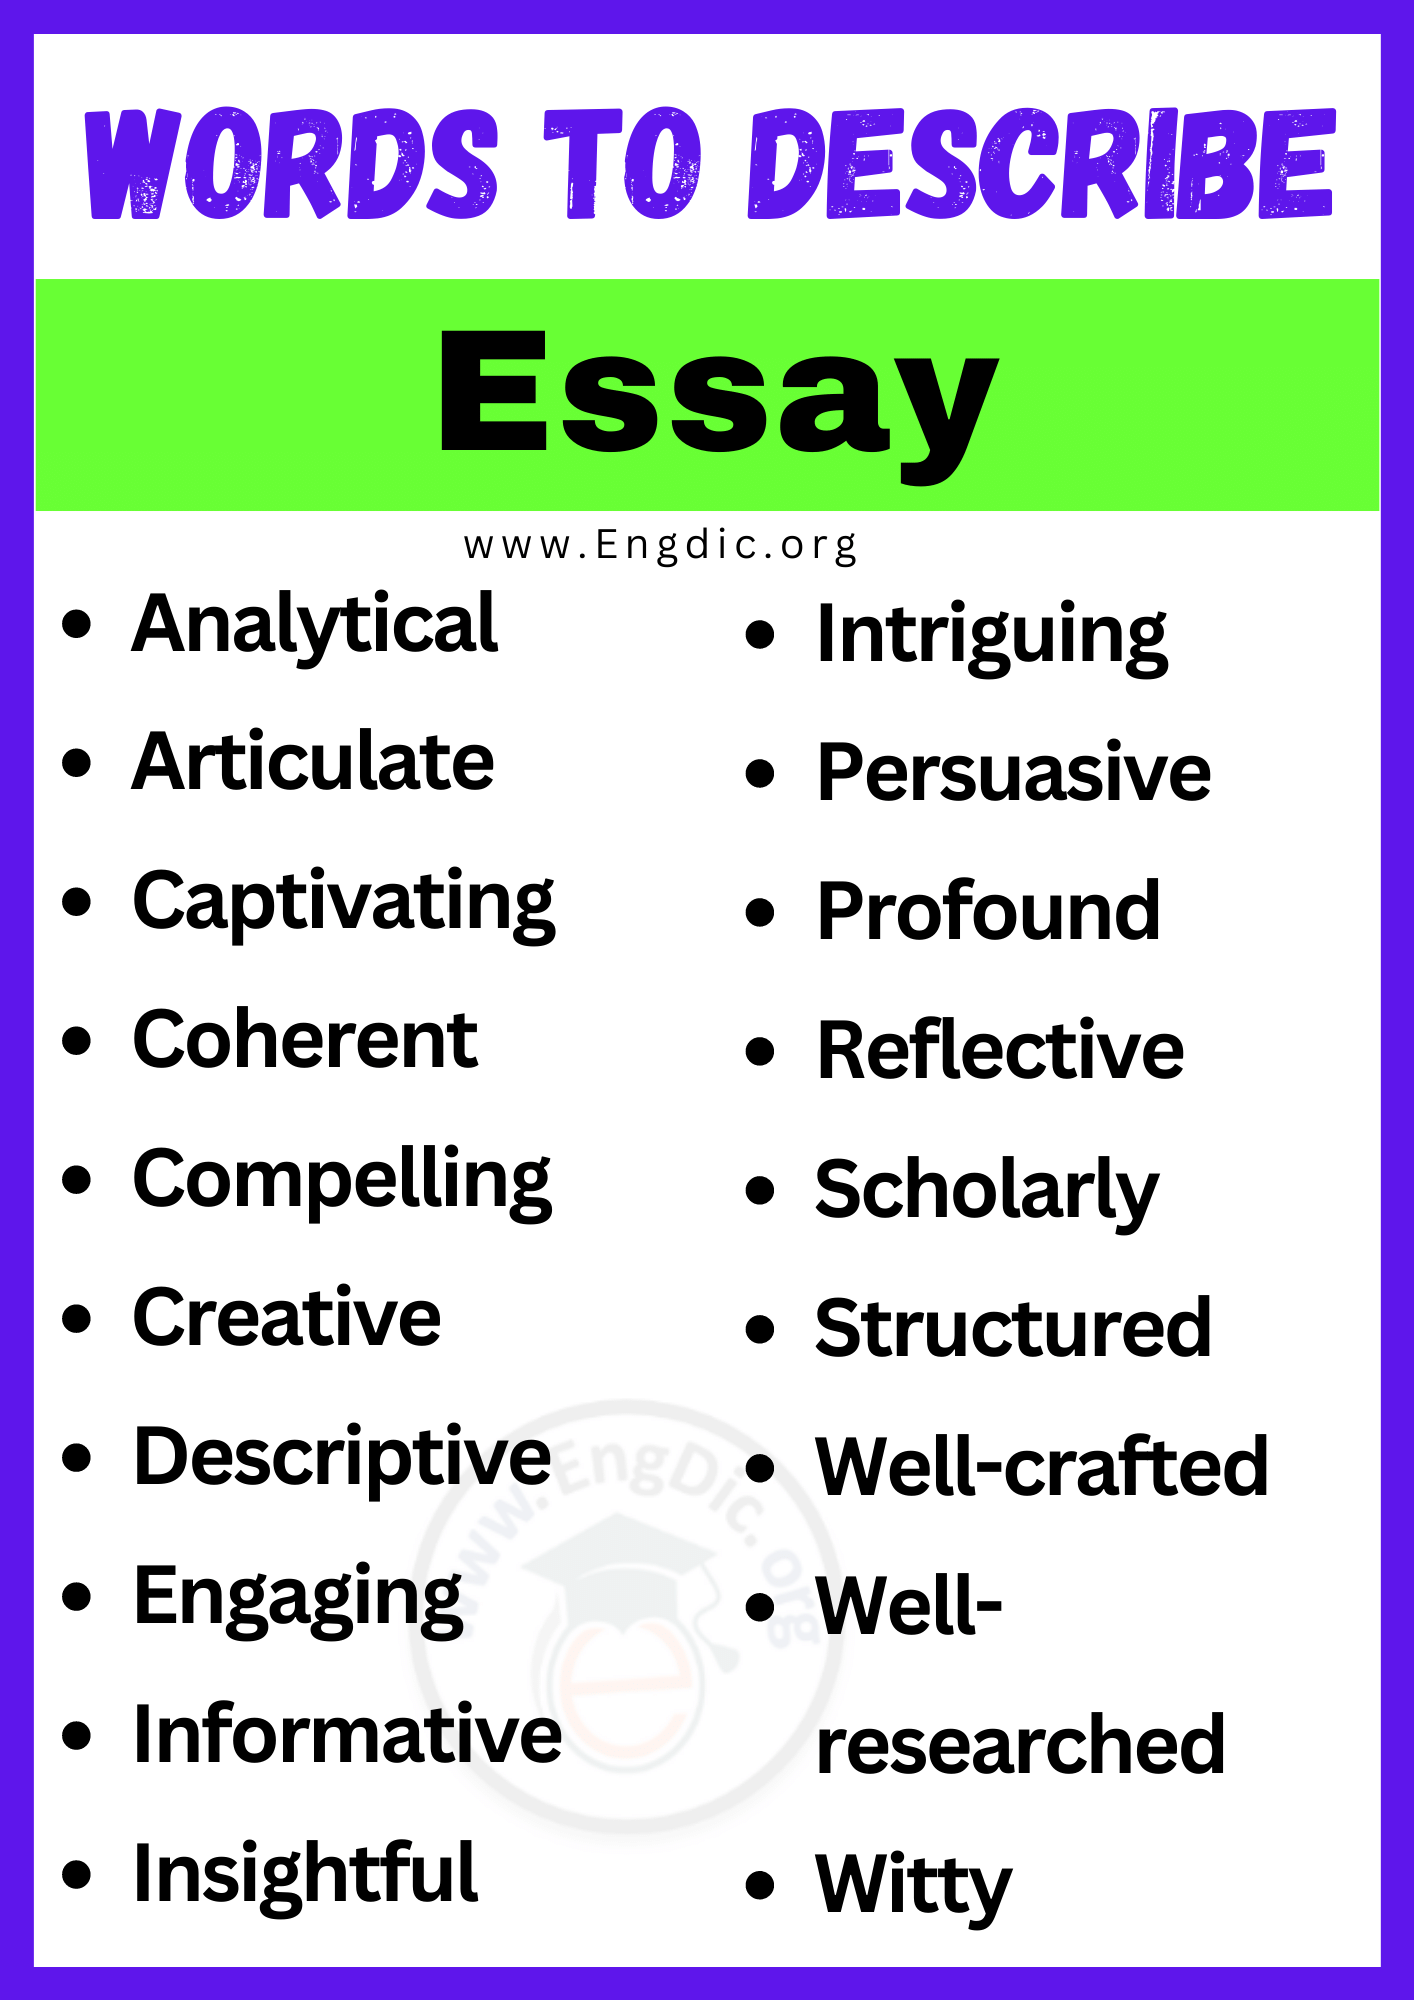 Words to Describe Essay